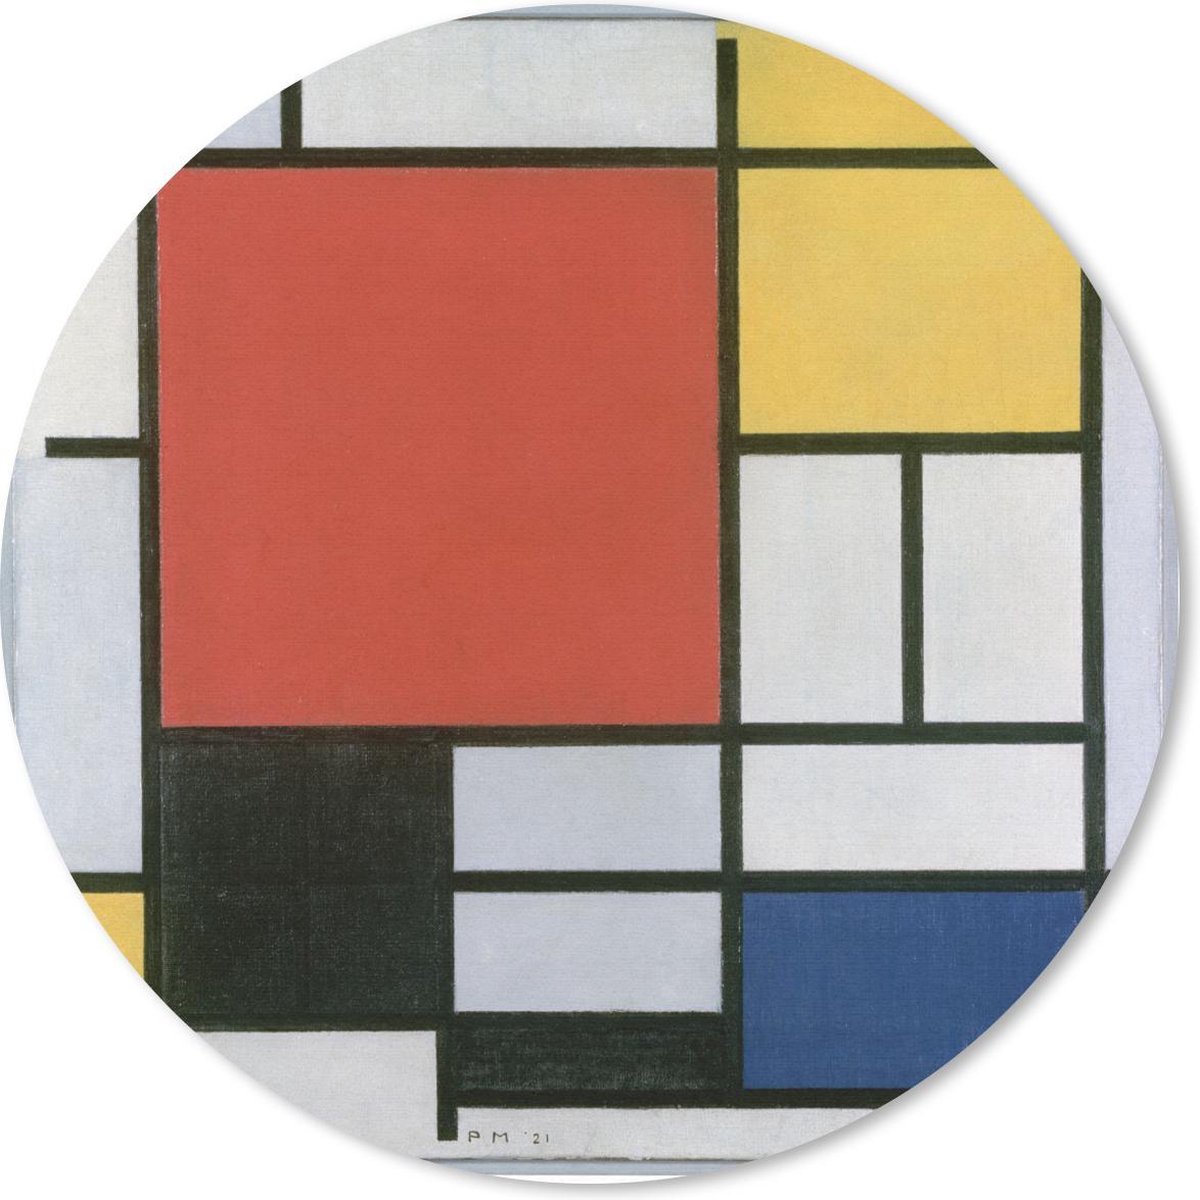 Muismat - Mousepad - Rond - Compositie 2 in Rood Blauw en Geel - Piet Mondriaan - 30x30 cm - Ronde muismat